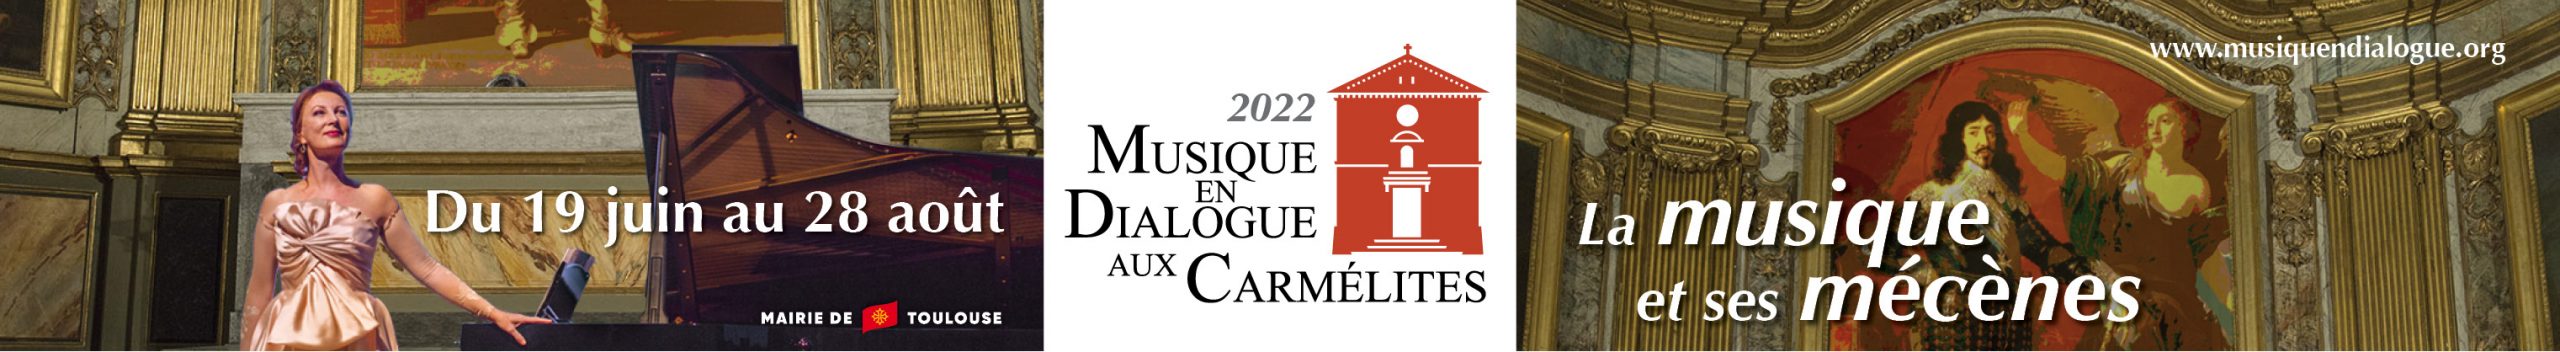 Musique En Dialoge Aux Carmélites 2022